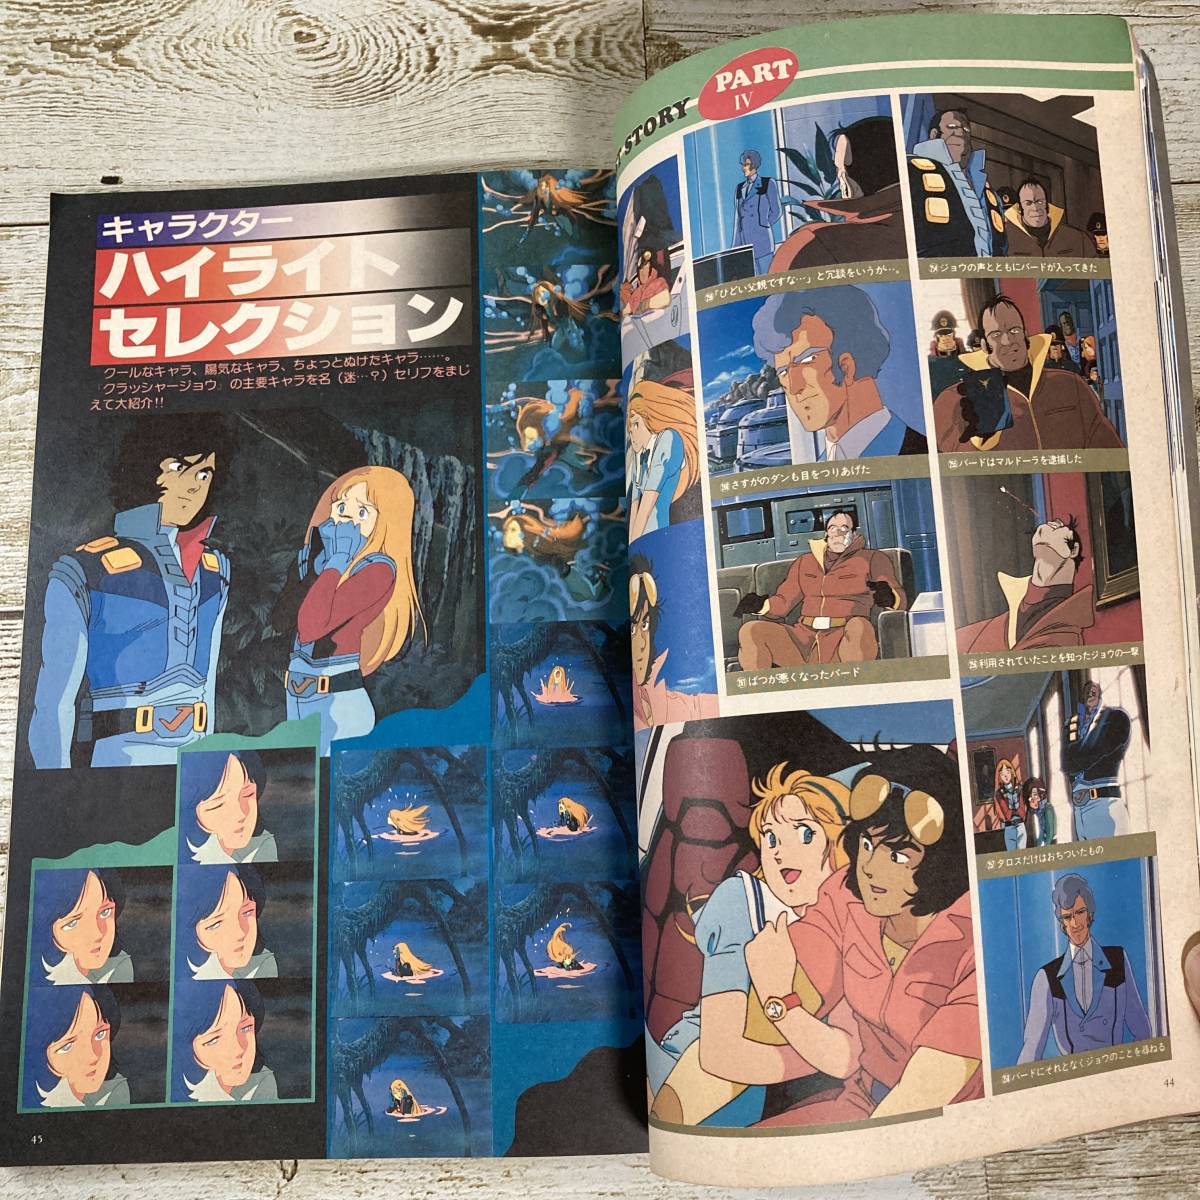 SA18-28 # отдельный выпуск Animedia Crusher Joe # Showa 58 год выпуск #. включая постер, кассета этикетка есть * retro * Junk [ включение в покупку не возможно ]